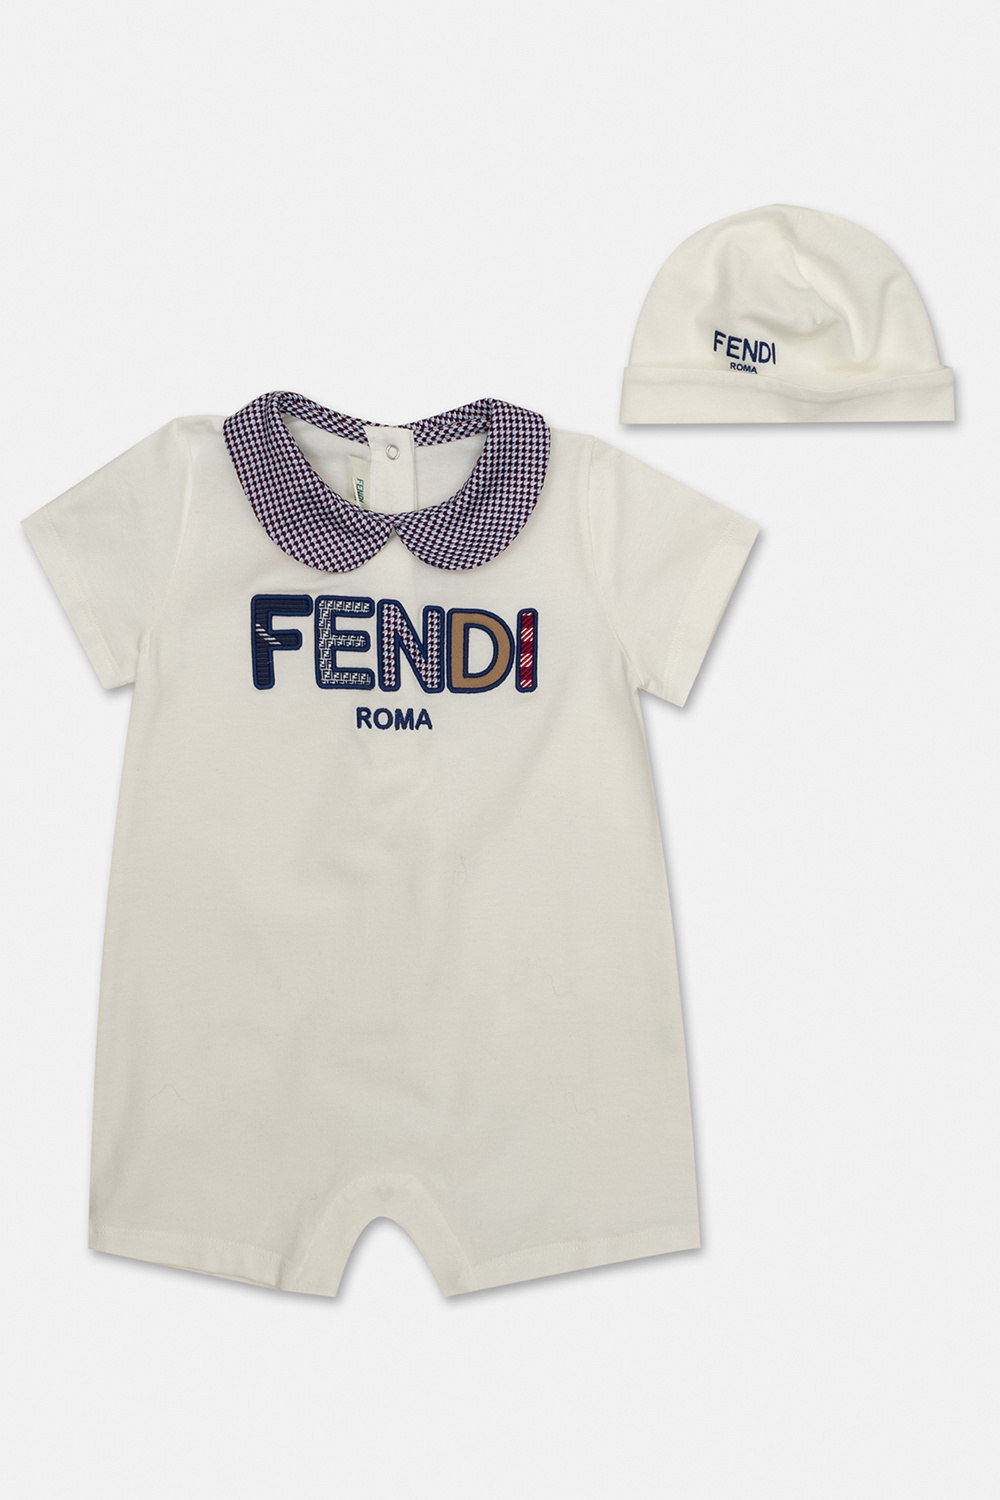 Gucci Kids Faux fur jumpsuit, Kids's Baby (0-36 months)